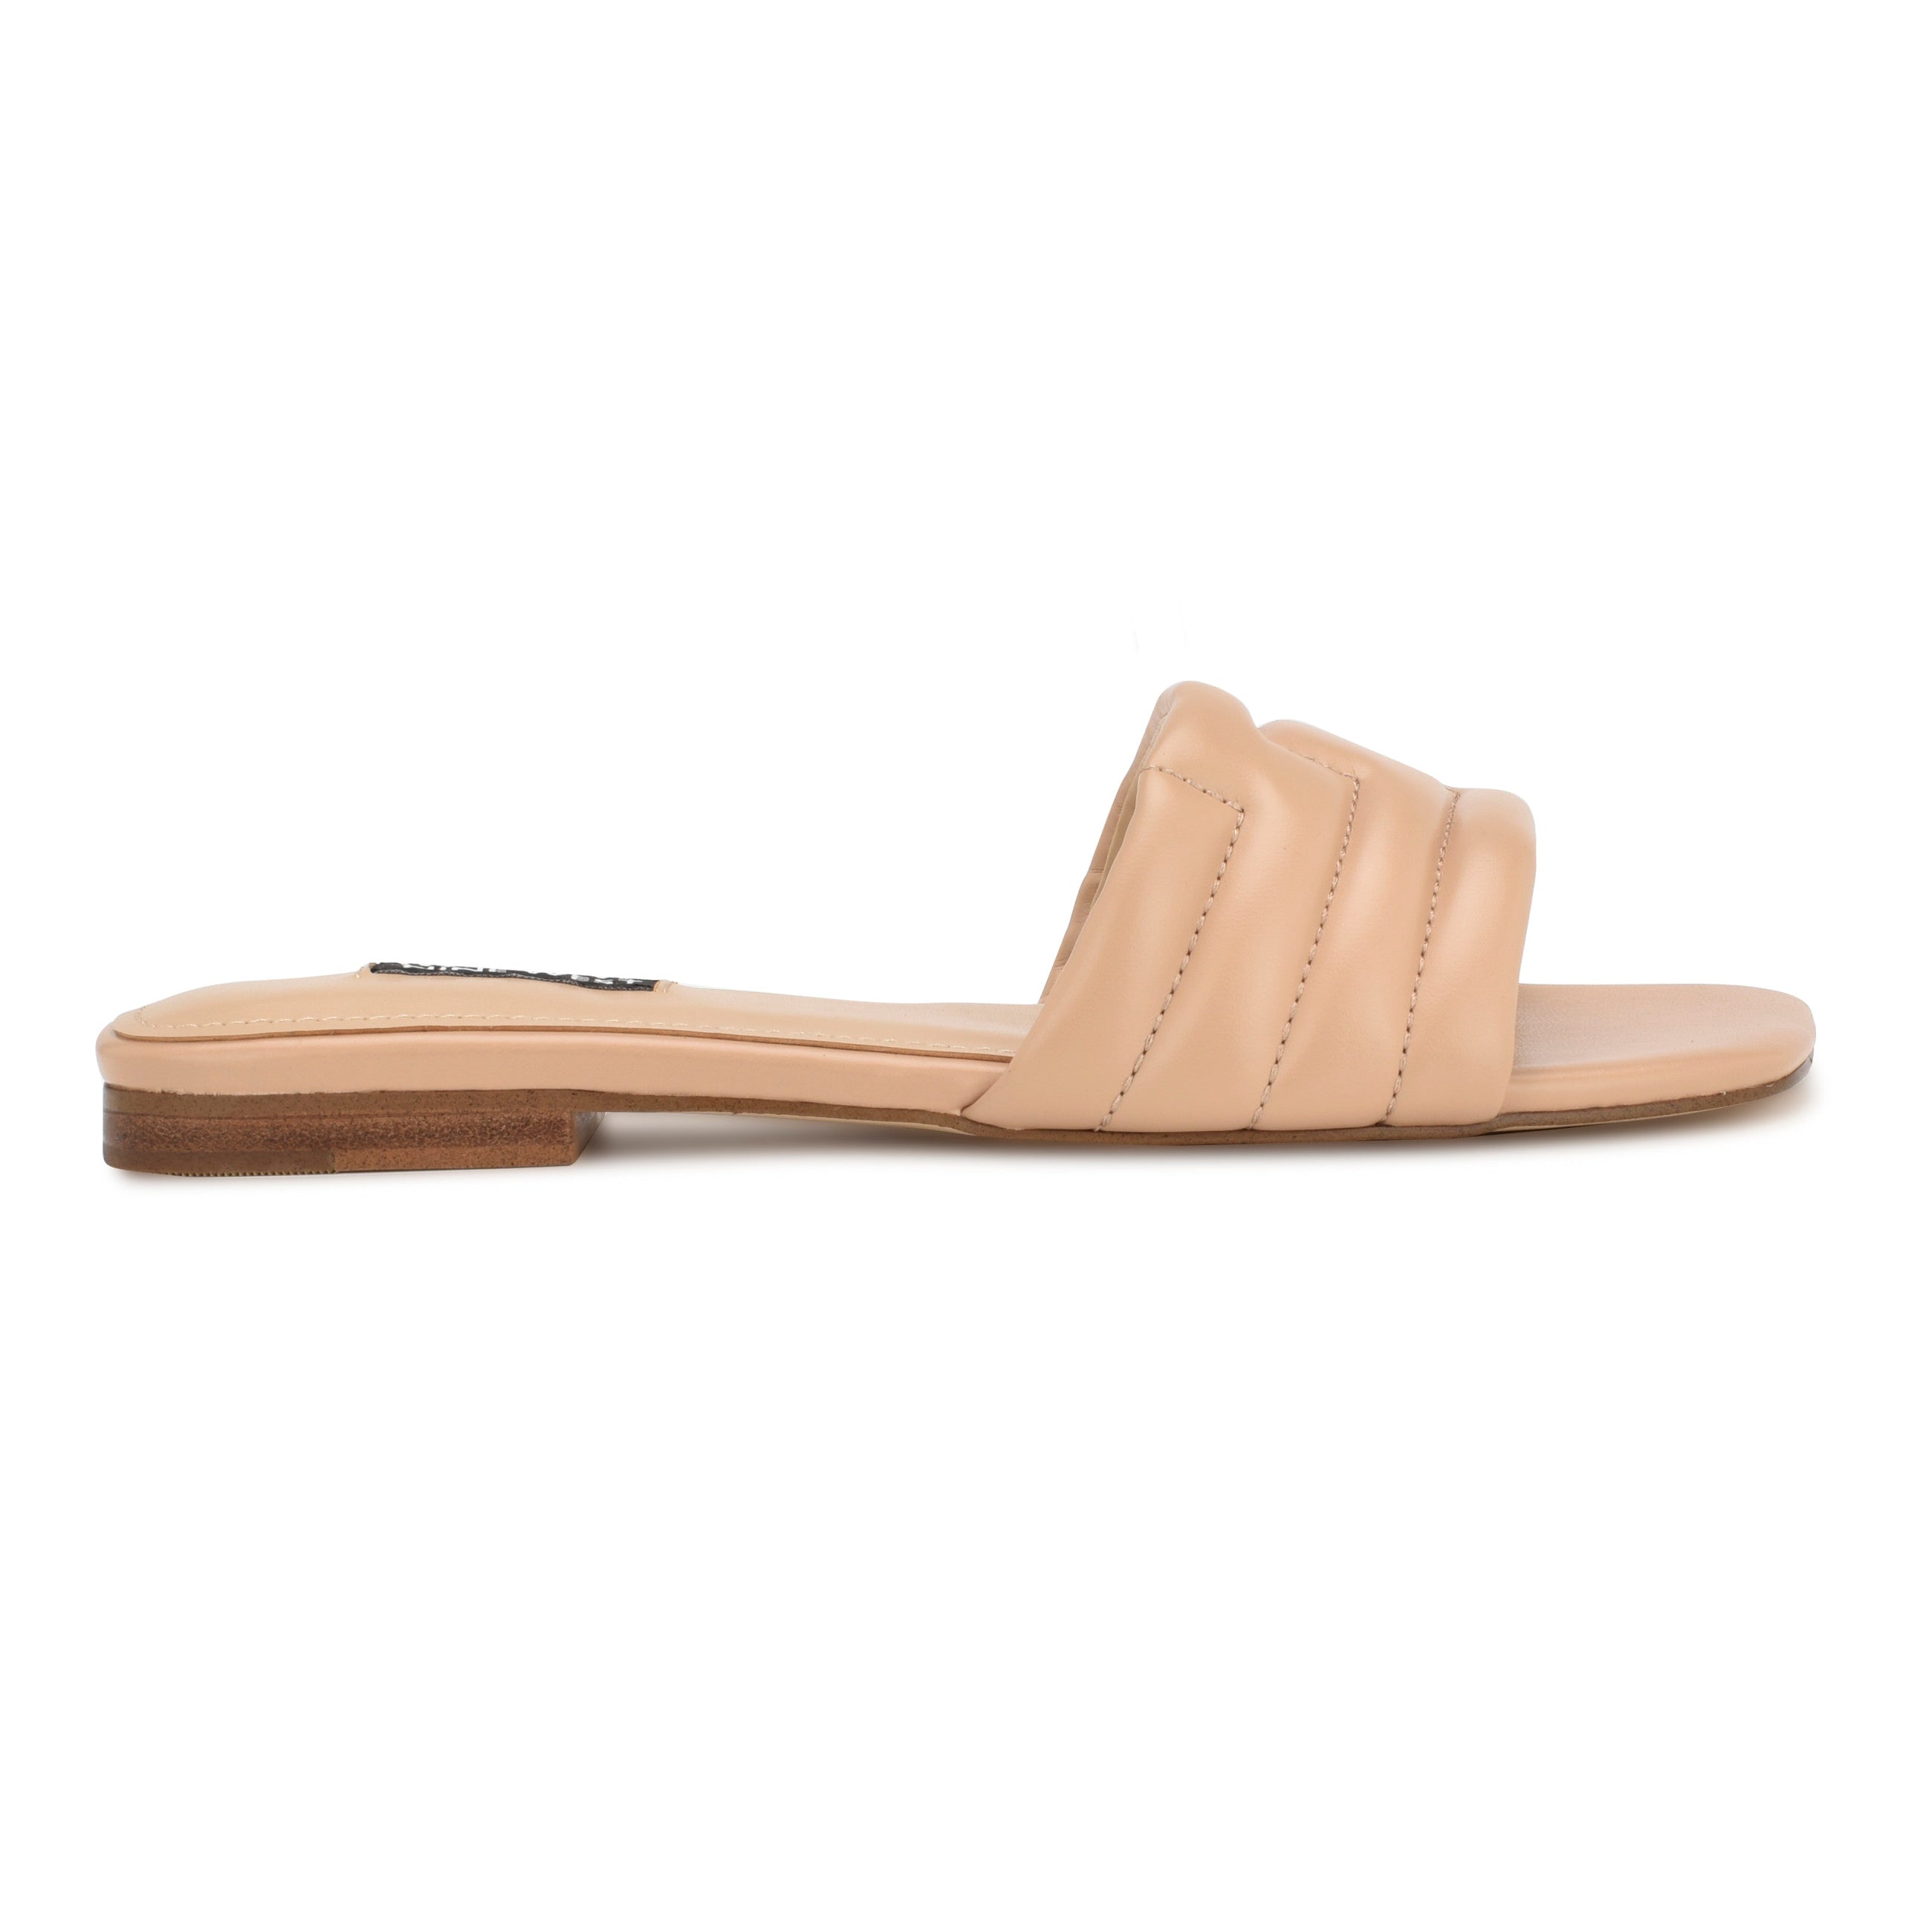 Menqs Flat Slide Sandals